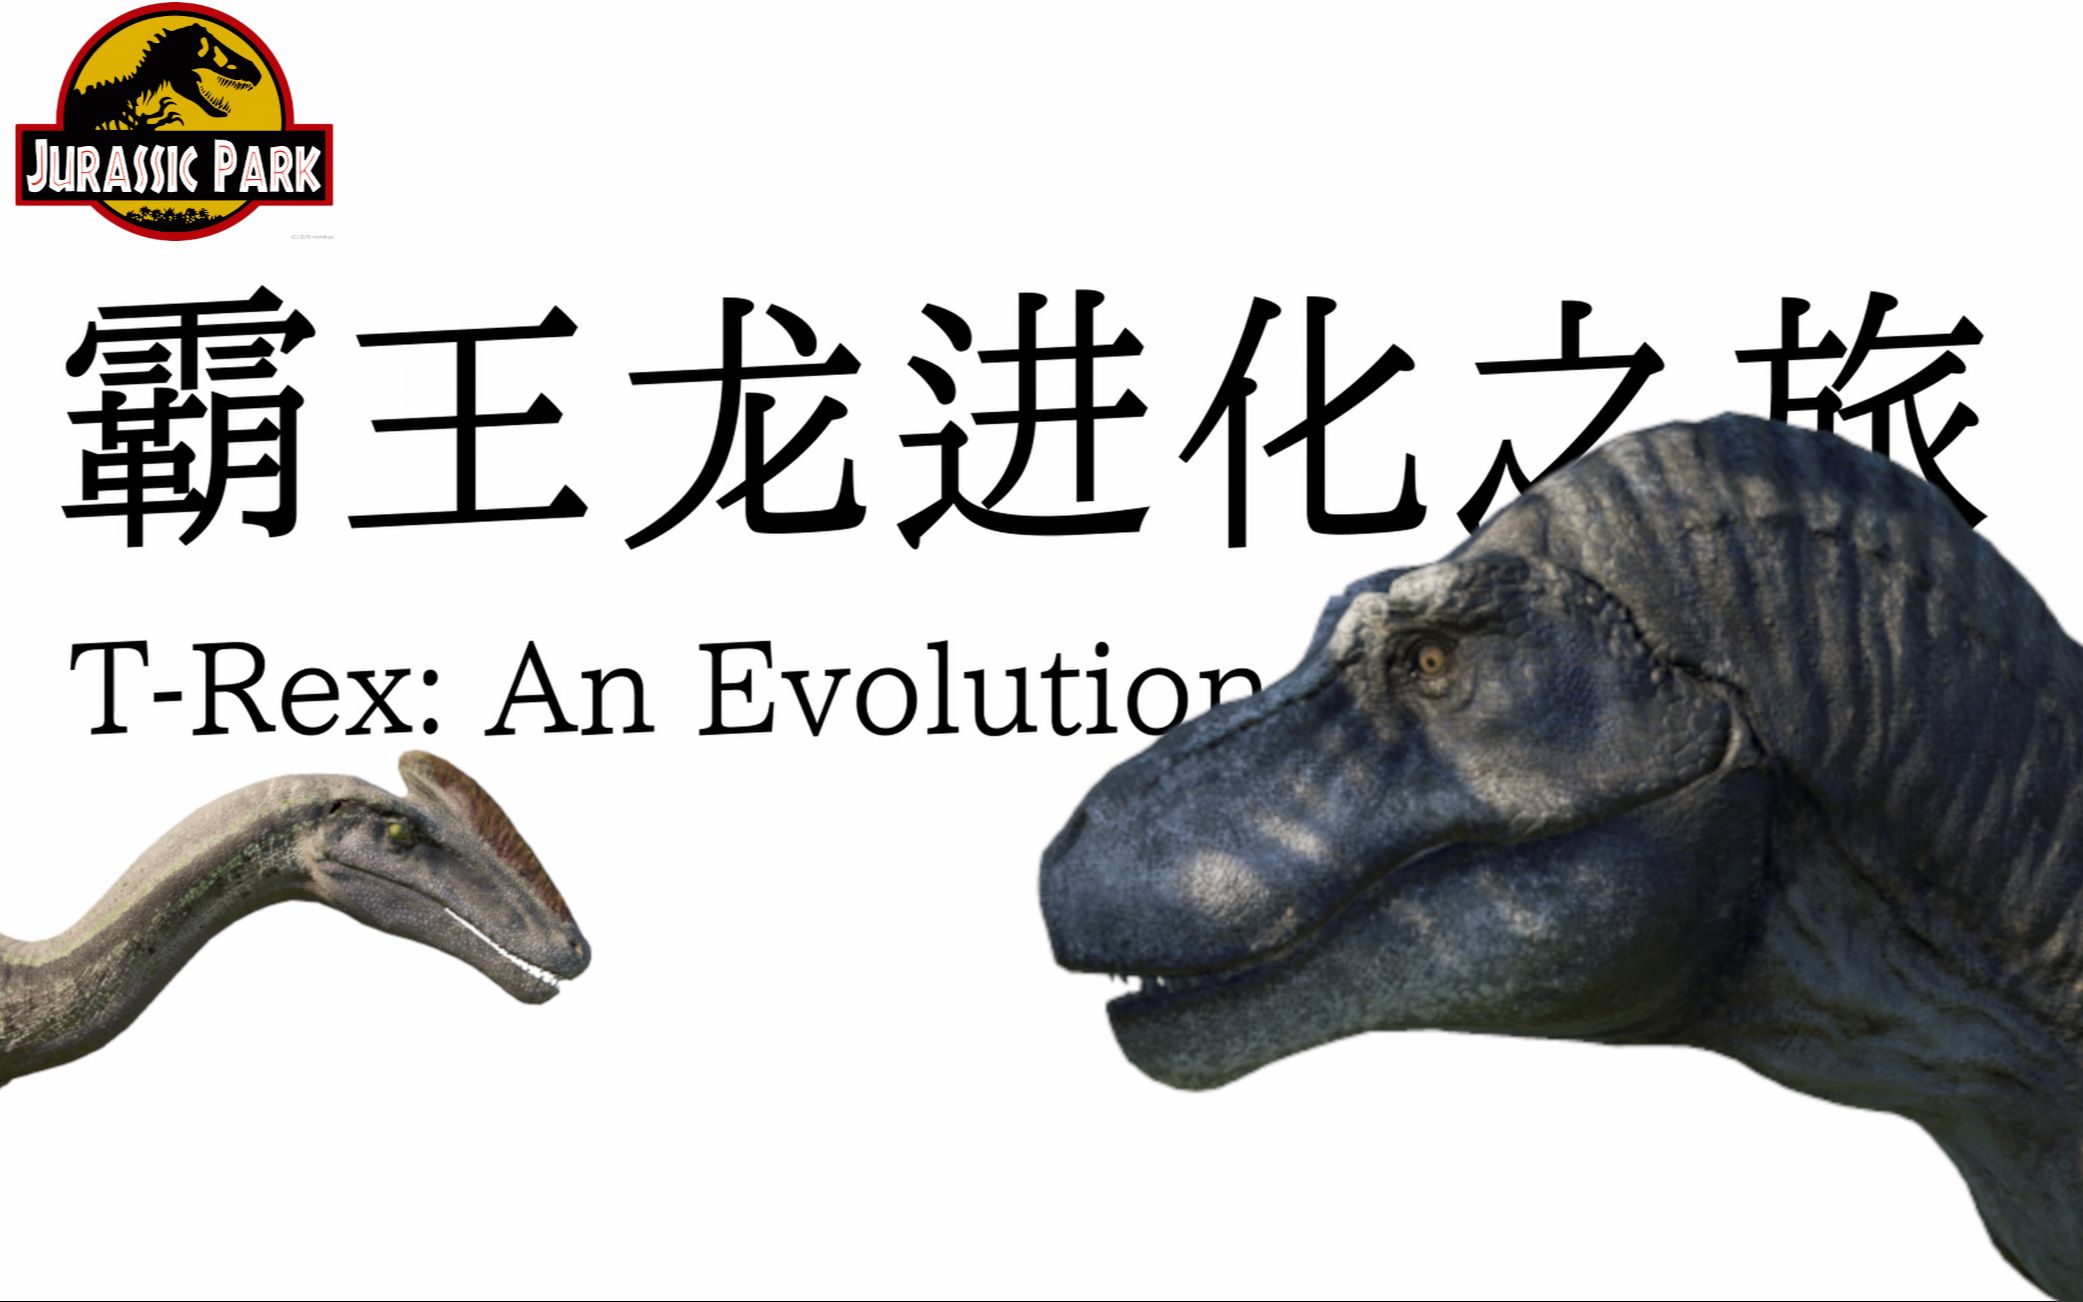 霸王龙进化之旅图片